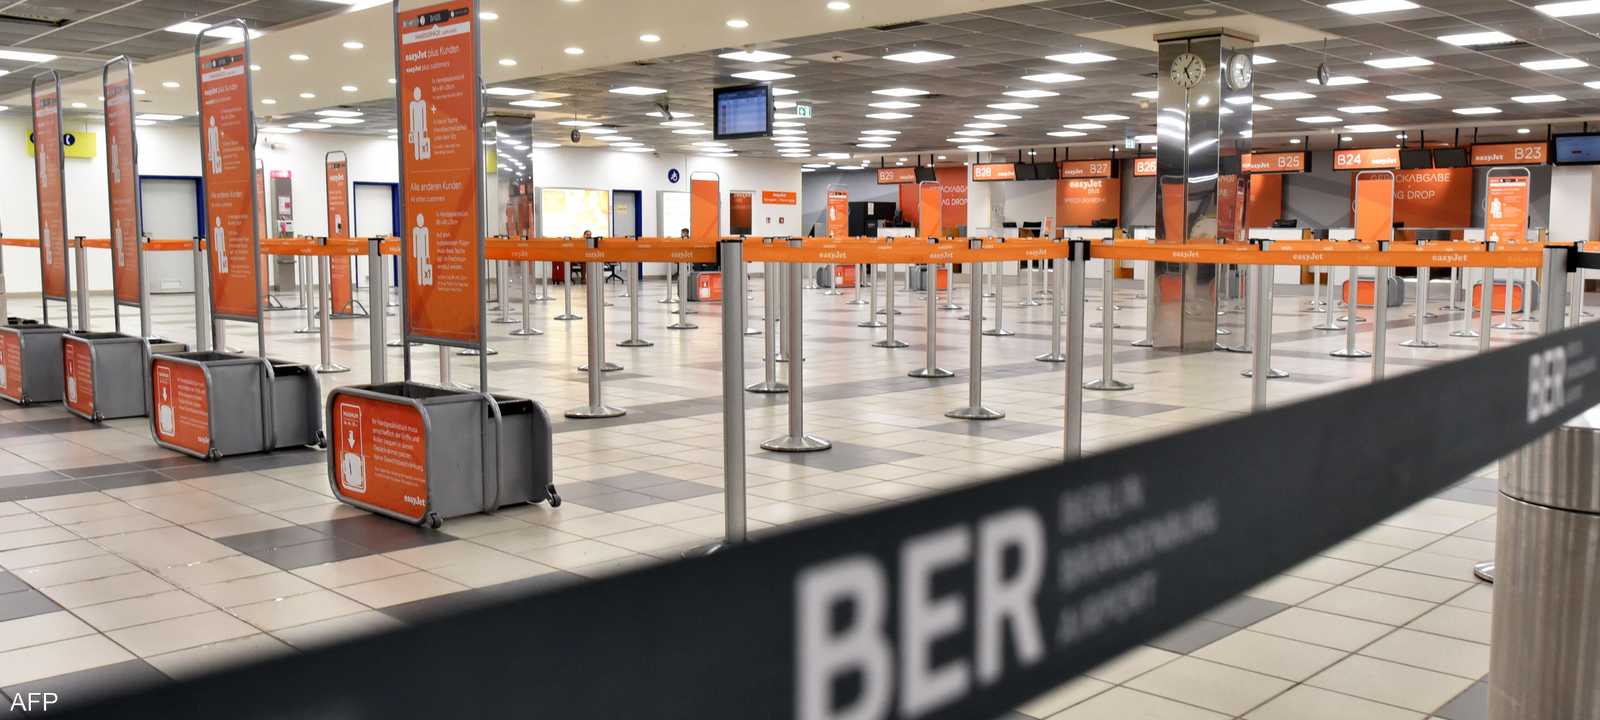 قررت إدارة مطار ميونيخ بألمانيا إلغاء أكثر من 700 رحلة ركاب